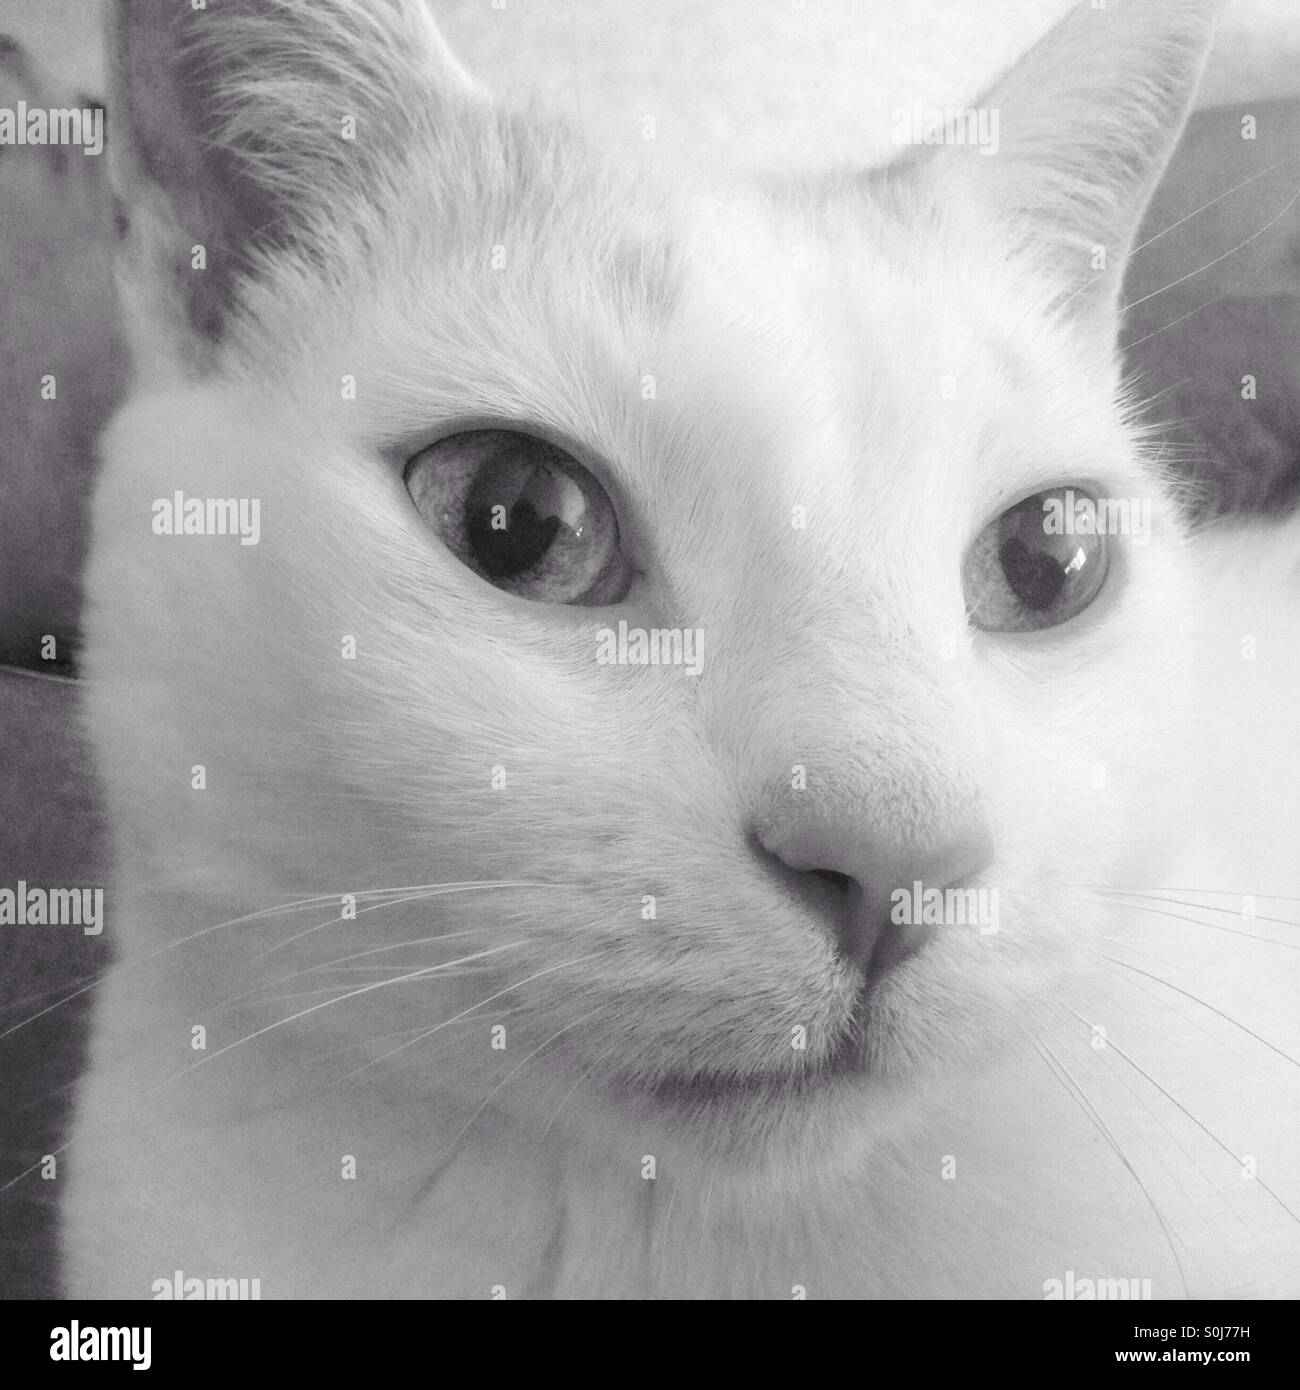 Pretty cat Stock Photo